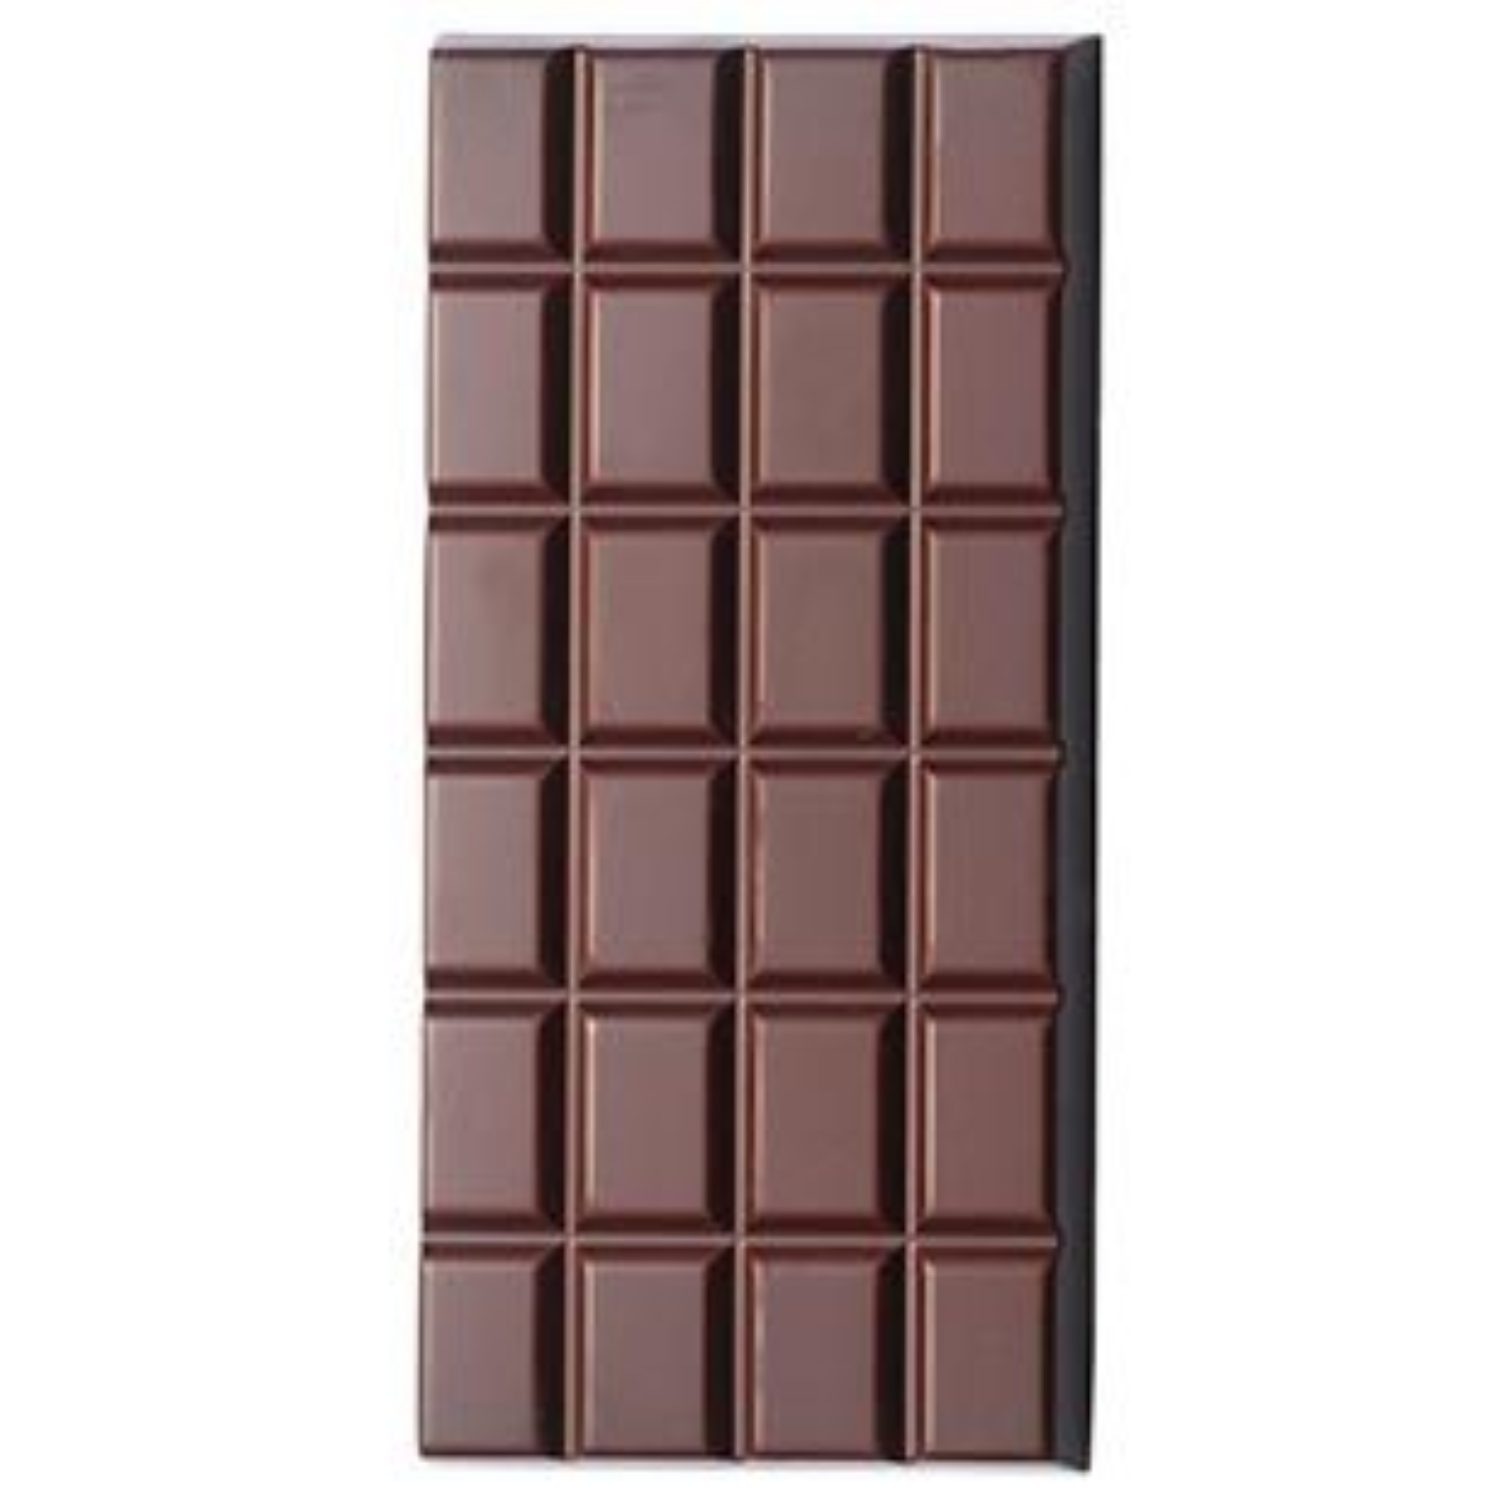 https://lecomptoirdelapatisserie.com/files/picture/d653ea20/moule-tablette-chocolat-classique-100-g-barry-le-comptoir-de-la-patisserie-1500-0.jpg